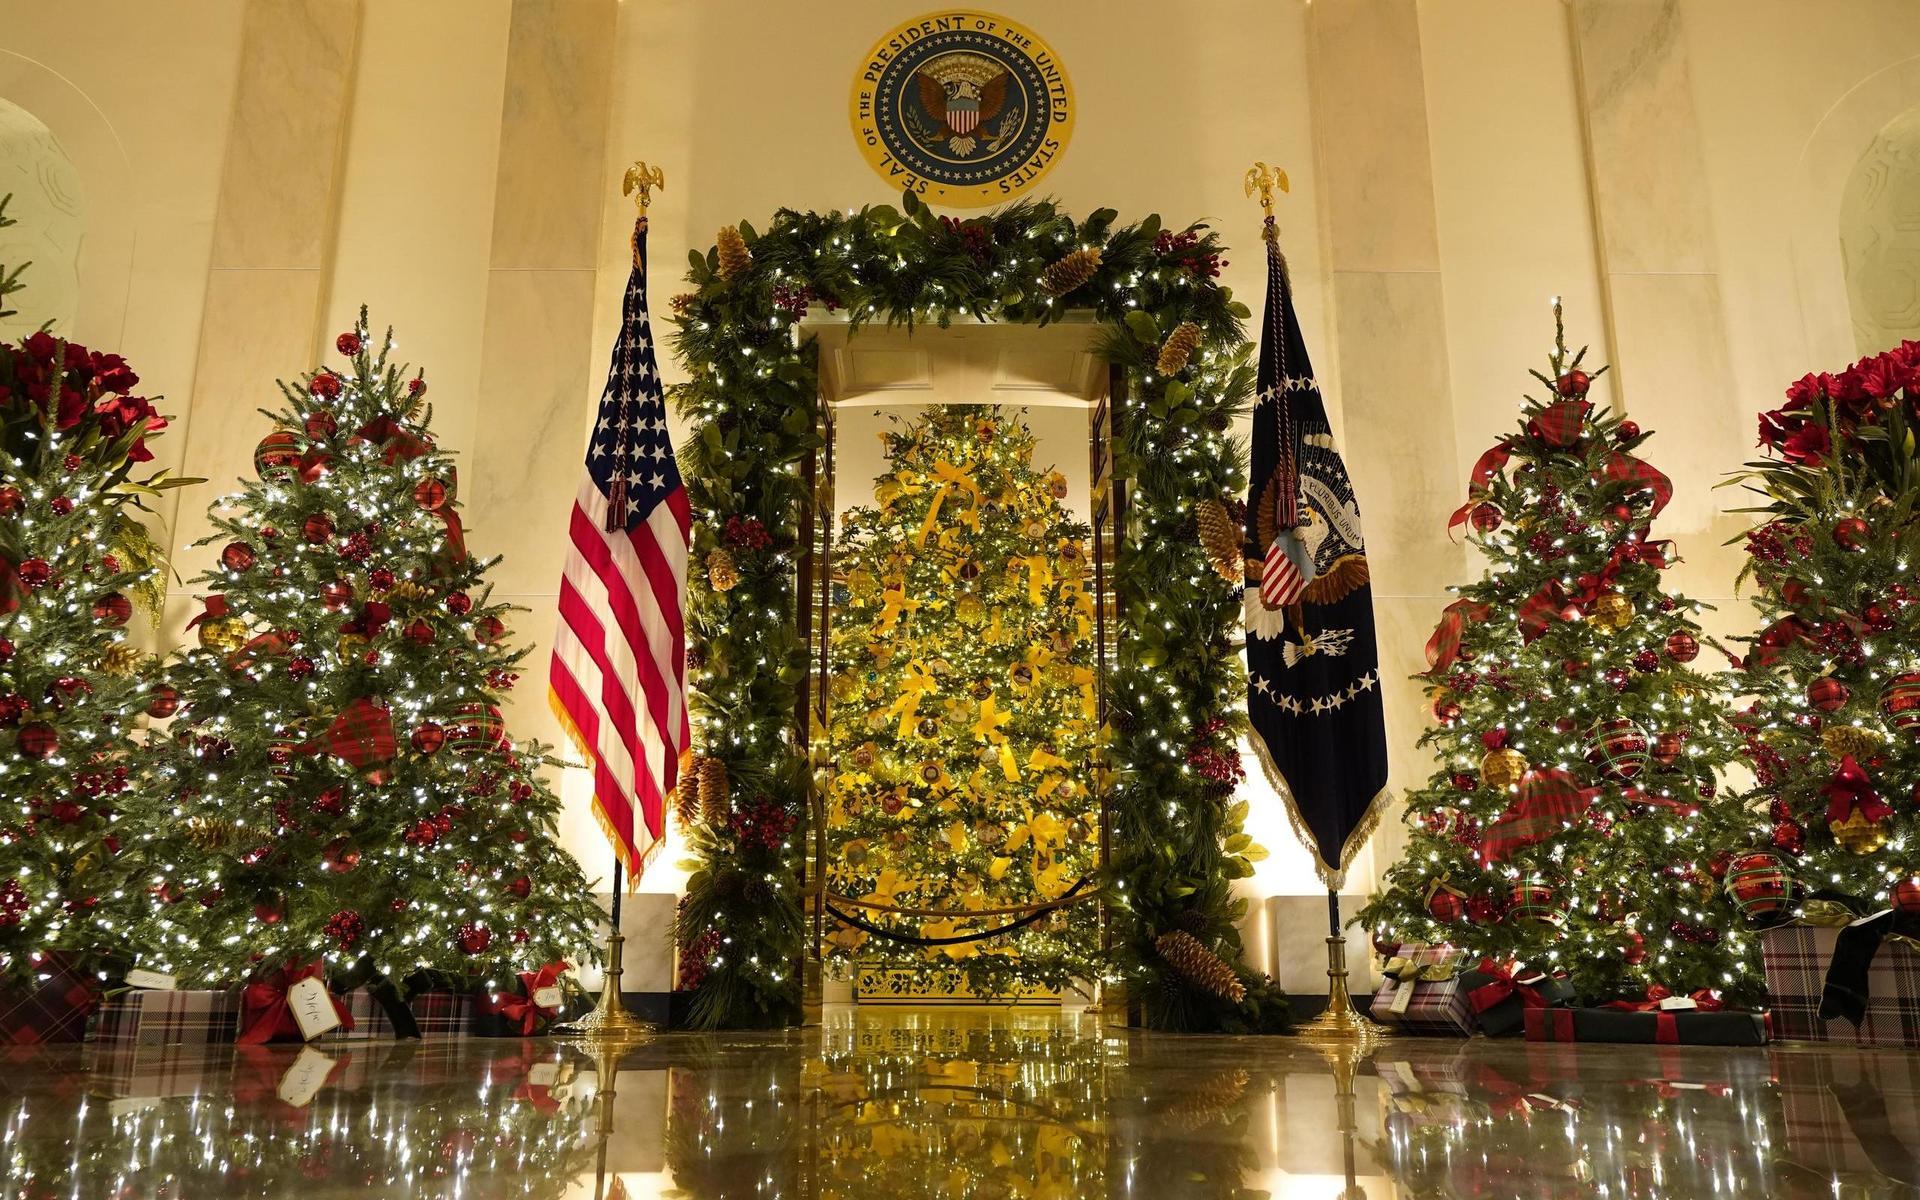 Korshallen, med det blåa rummet i bakgrunden, har dekorerats inför jul. Bakom dekorationerna står landets första dam, Melania Trump.